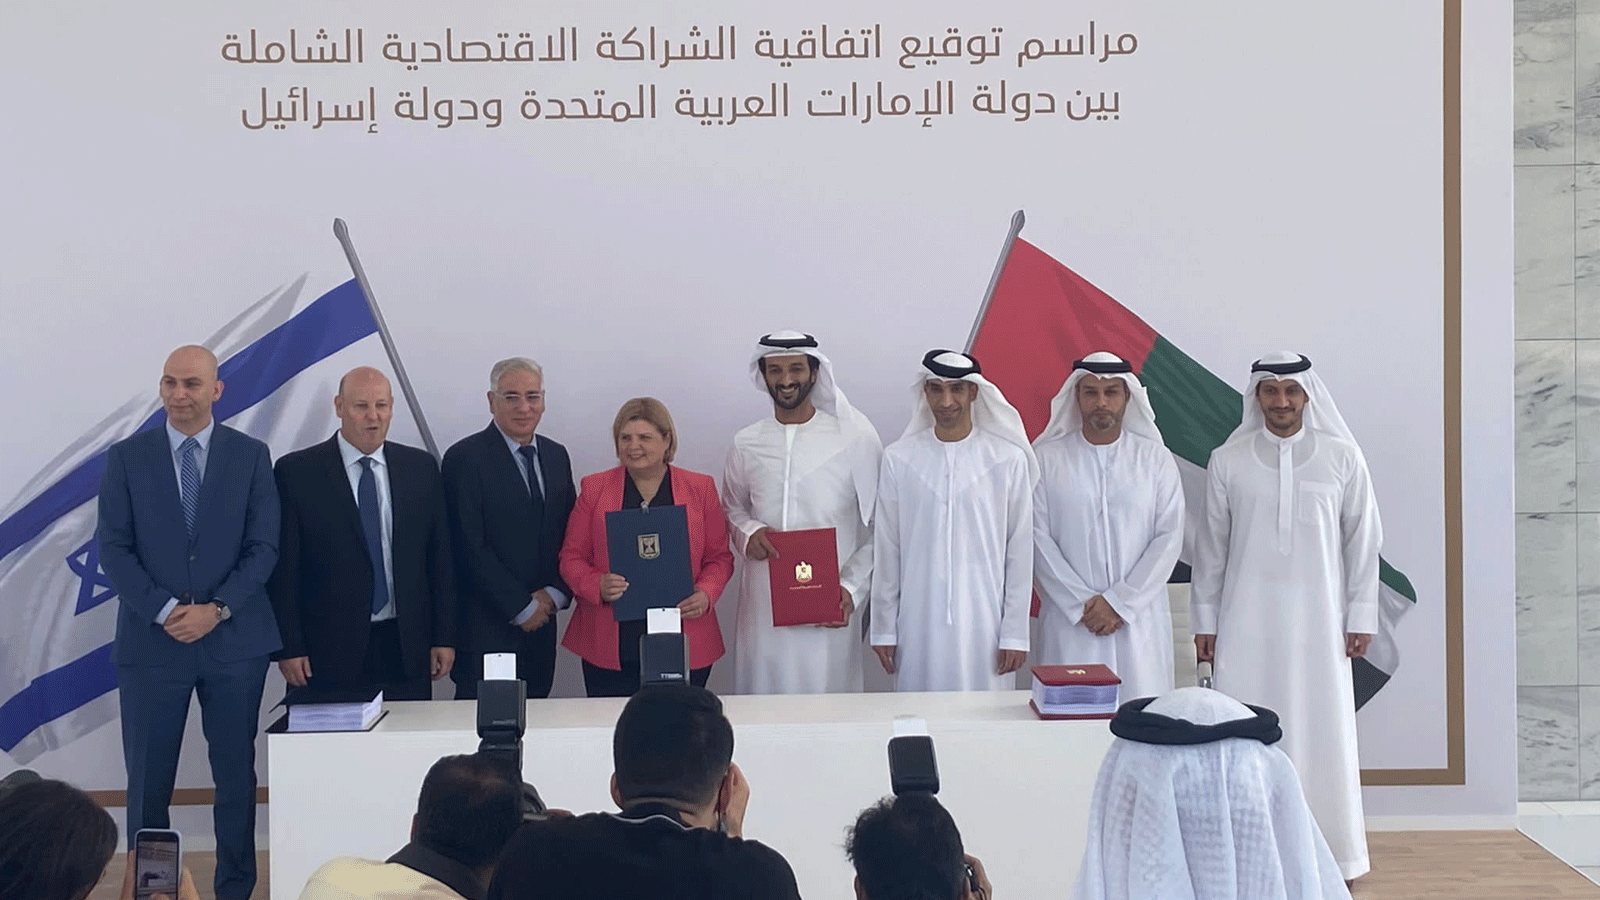 إسرائيل توقع مع الإمارات أول اتفاق تجارة حرة مع دولة عربية